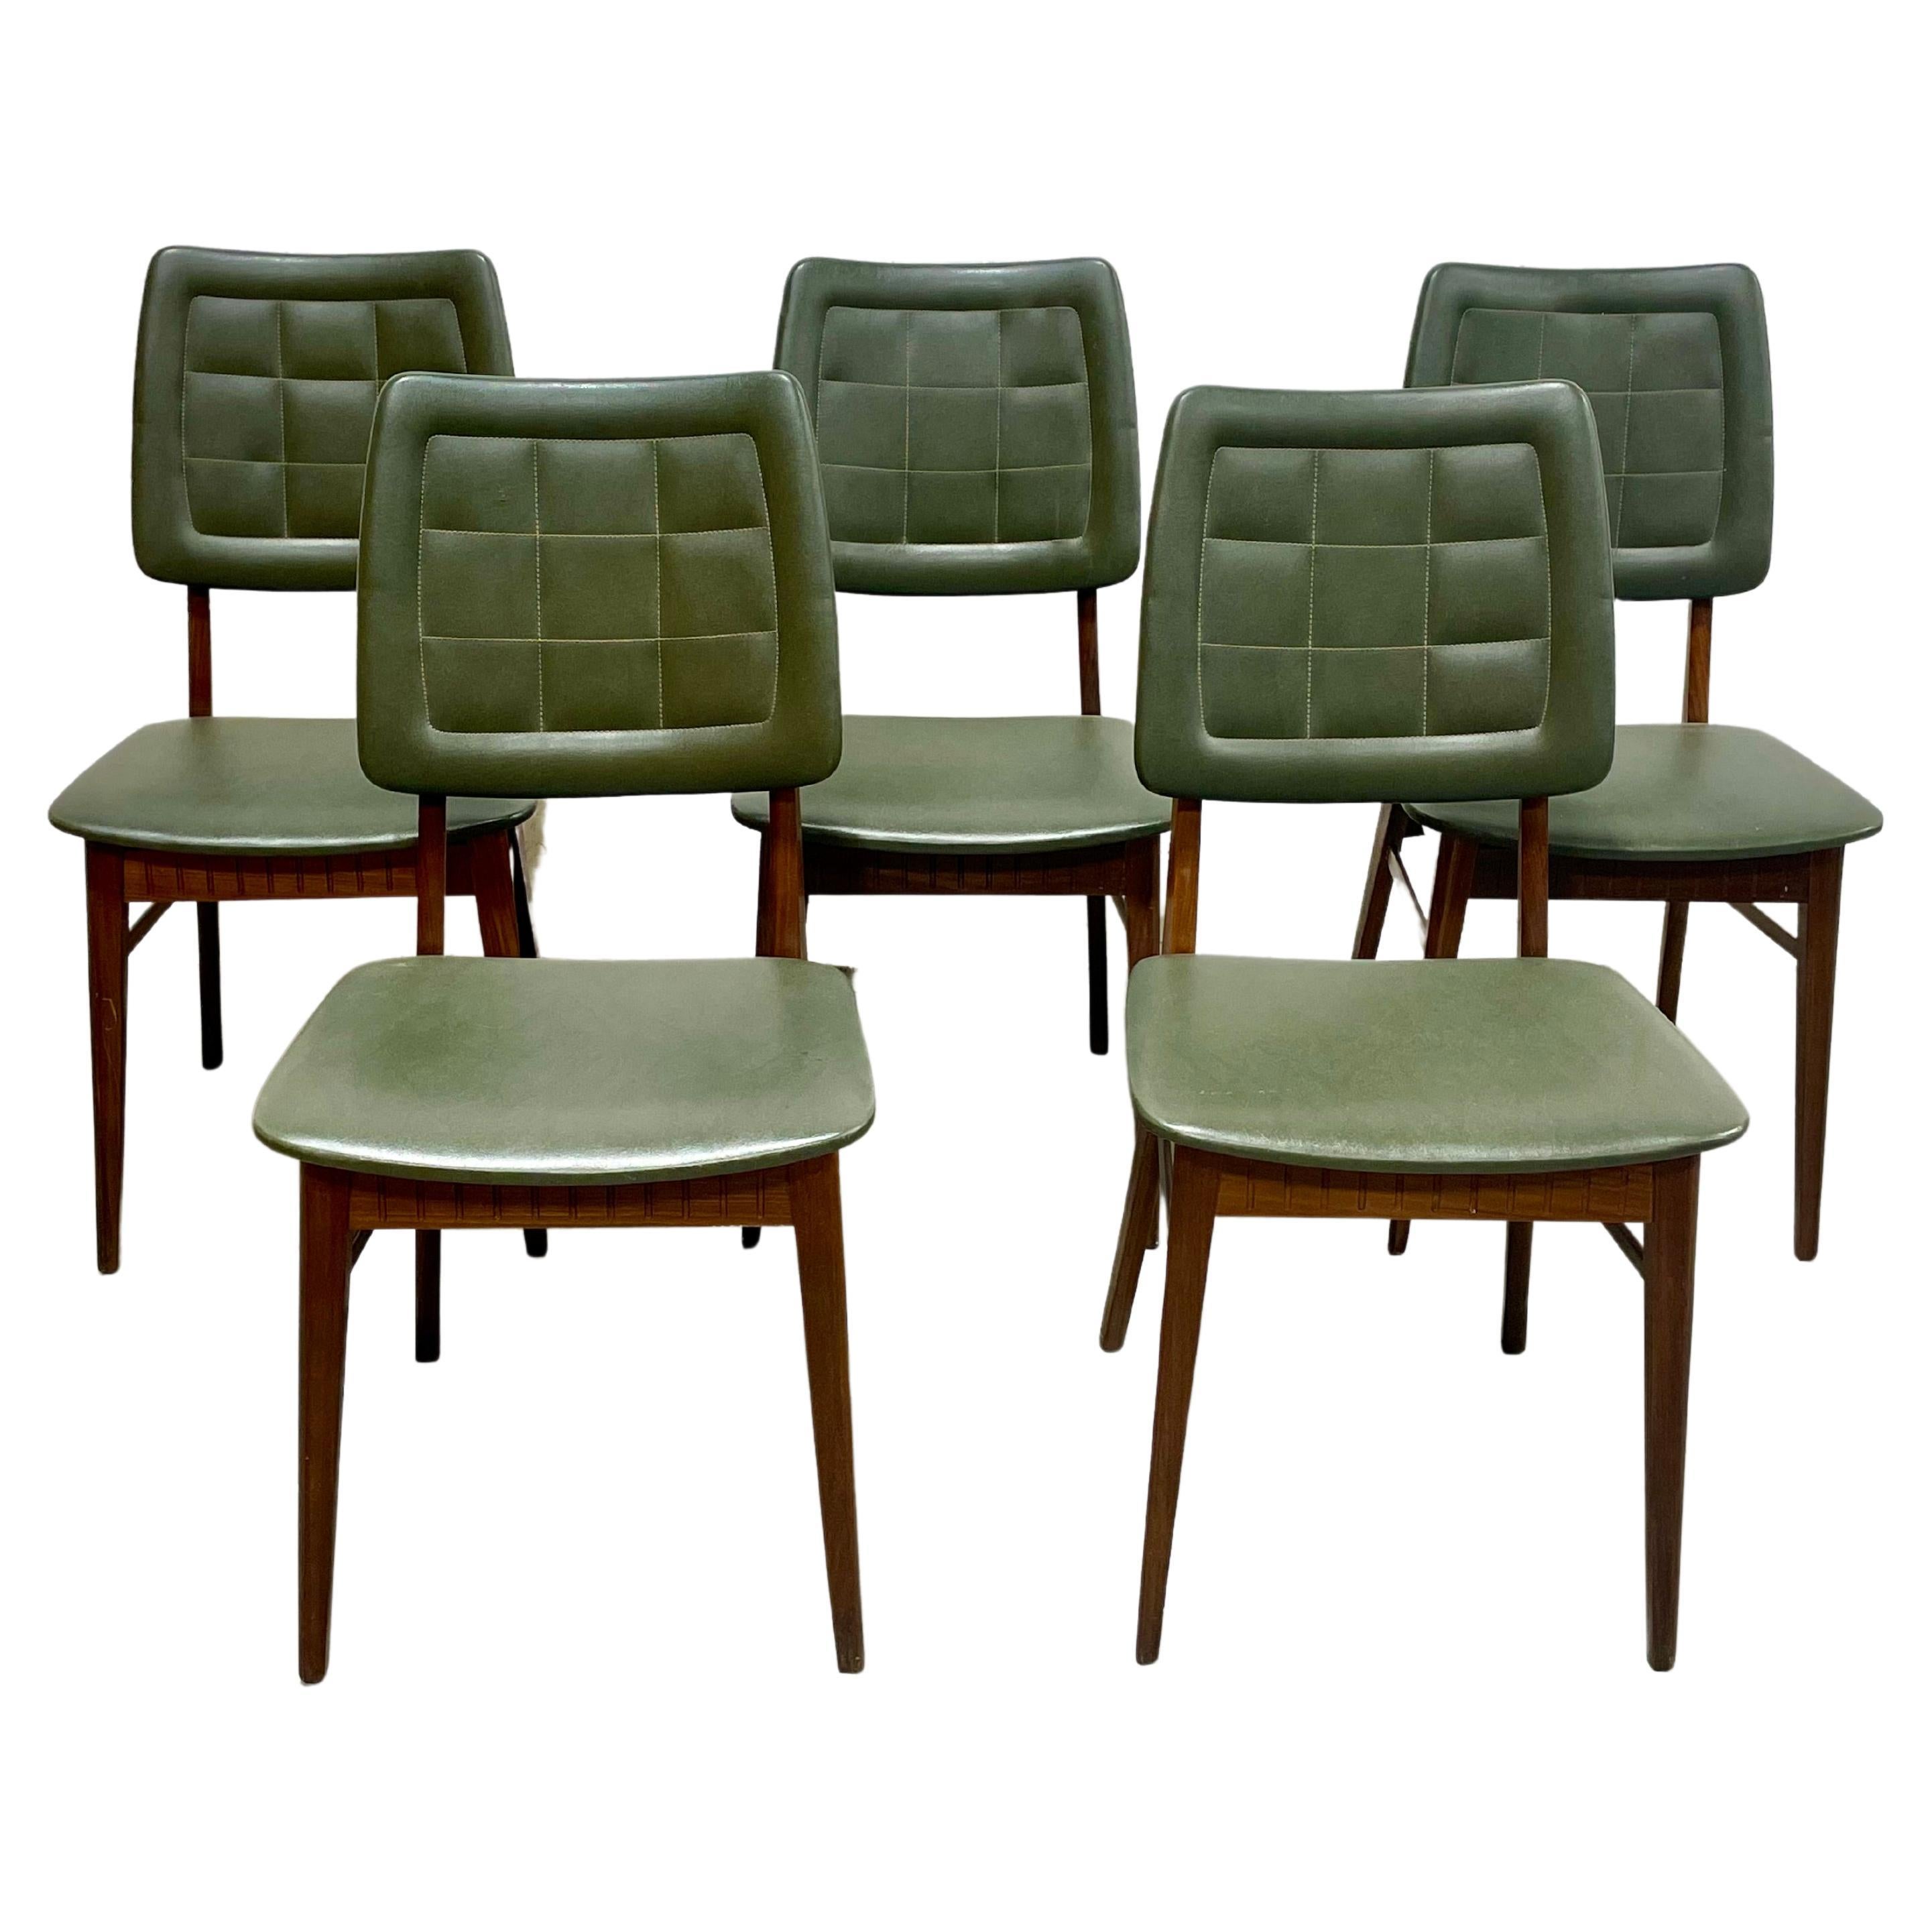 Satz von fünf dänischen Esszimmerstühlen aus Teakholz aus der Mitte des Jahrhunderts, hergestellt in Dänemark, ca. 1960er Jahre.   Das atemberaubende Teakholz weist eine unglaubliche Maserung auf und ist frisch gereinigt und geölt worden. Die Stühle